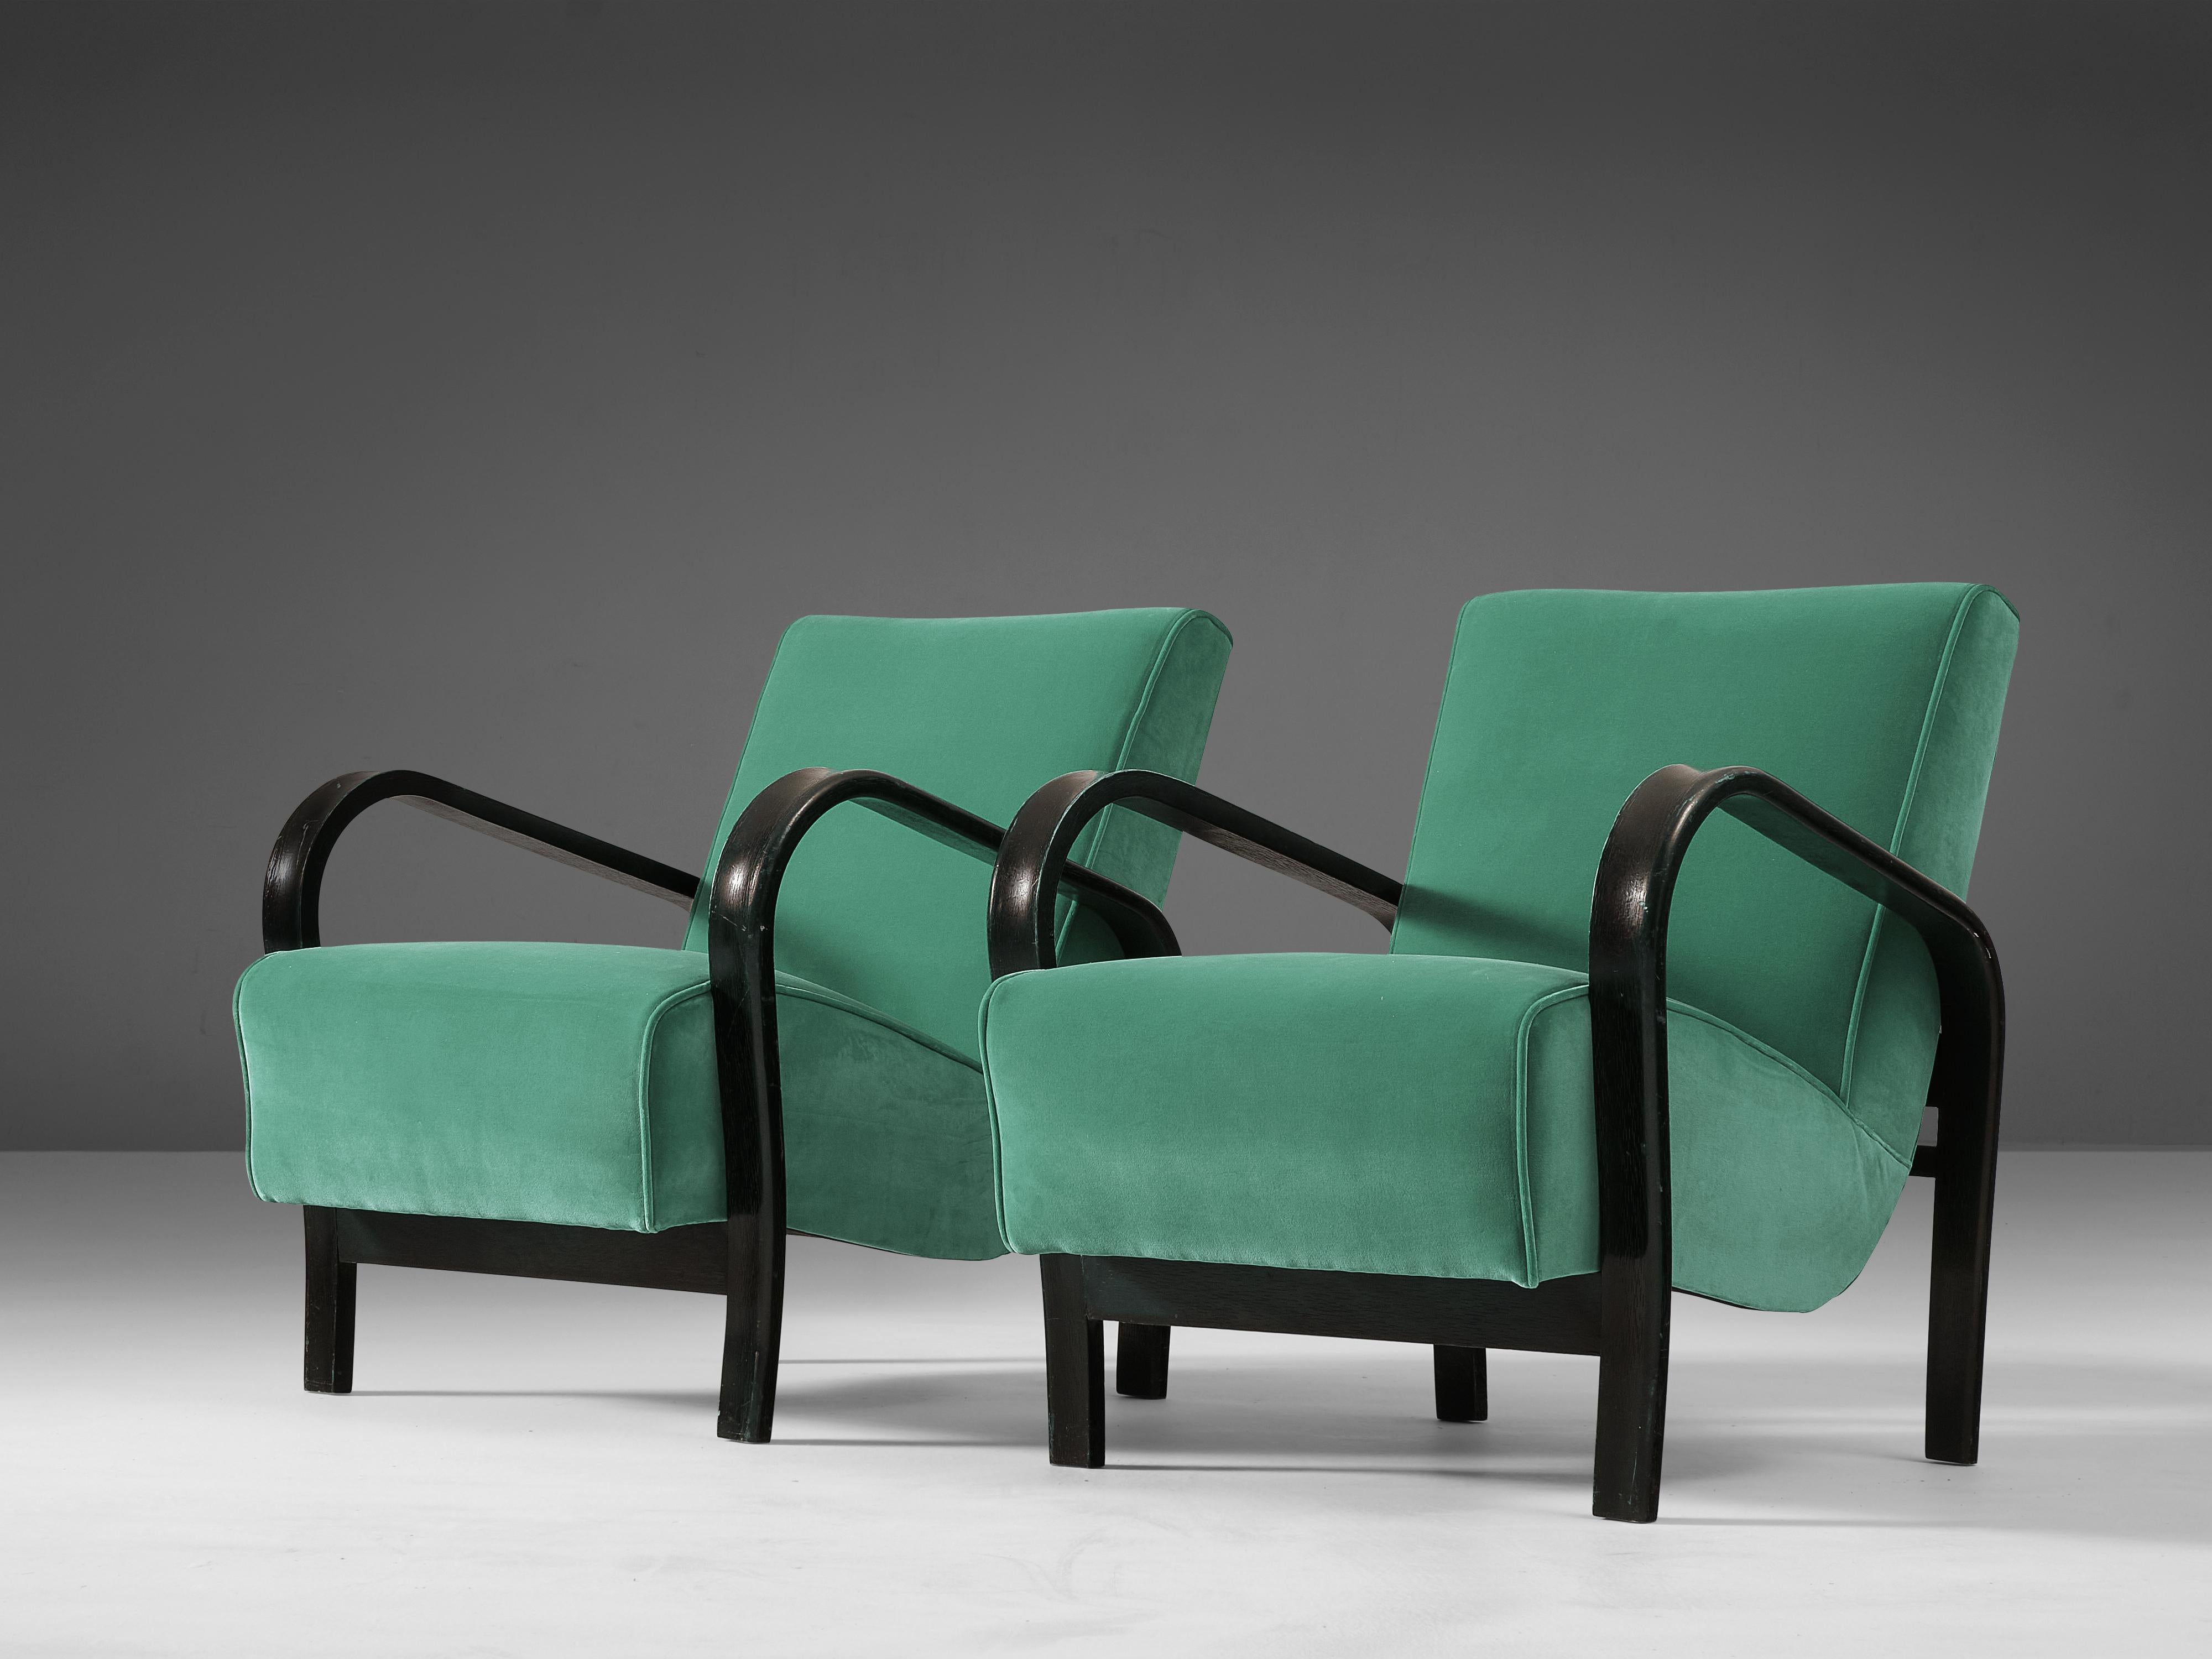 Jindrich Halabala, fauteuils, bois, tissu, République tchèque, années 1930.

Fauteuils dynamiques avec de beaux accoudoirs fluides. La caractéristique principale de ces chaises sont les accoudoirs voluptueux et incurvés qui sont si typiques de